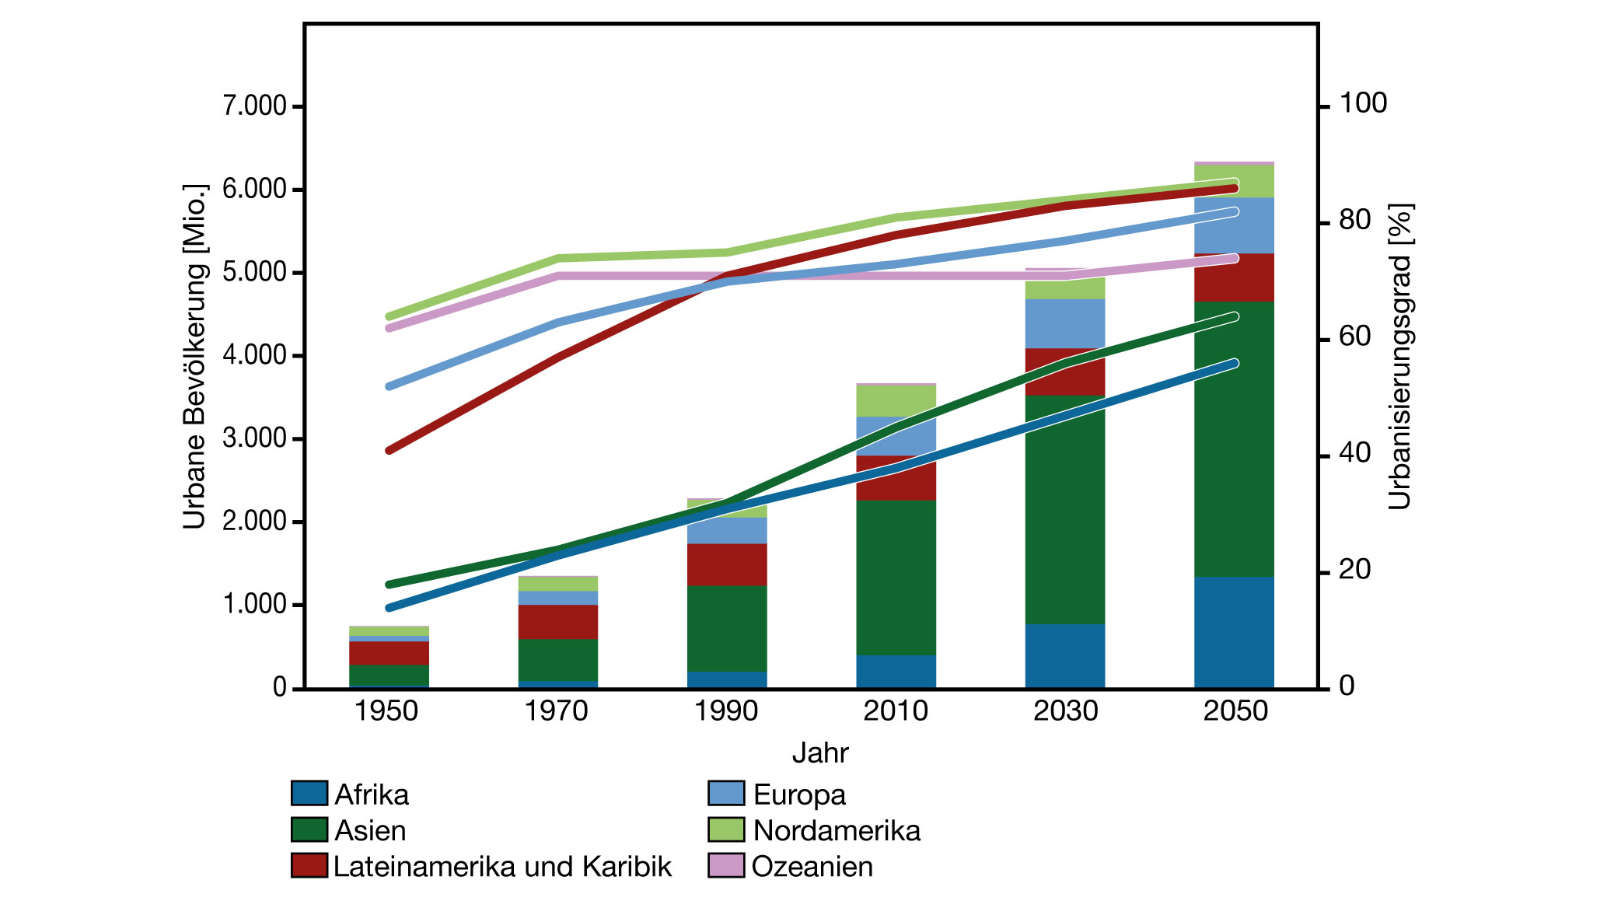 Urbane Bevölkerung (Säulen) und Urbanisierungsgrad (Linien) nach Region (1950–2050)